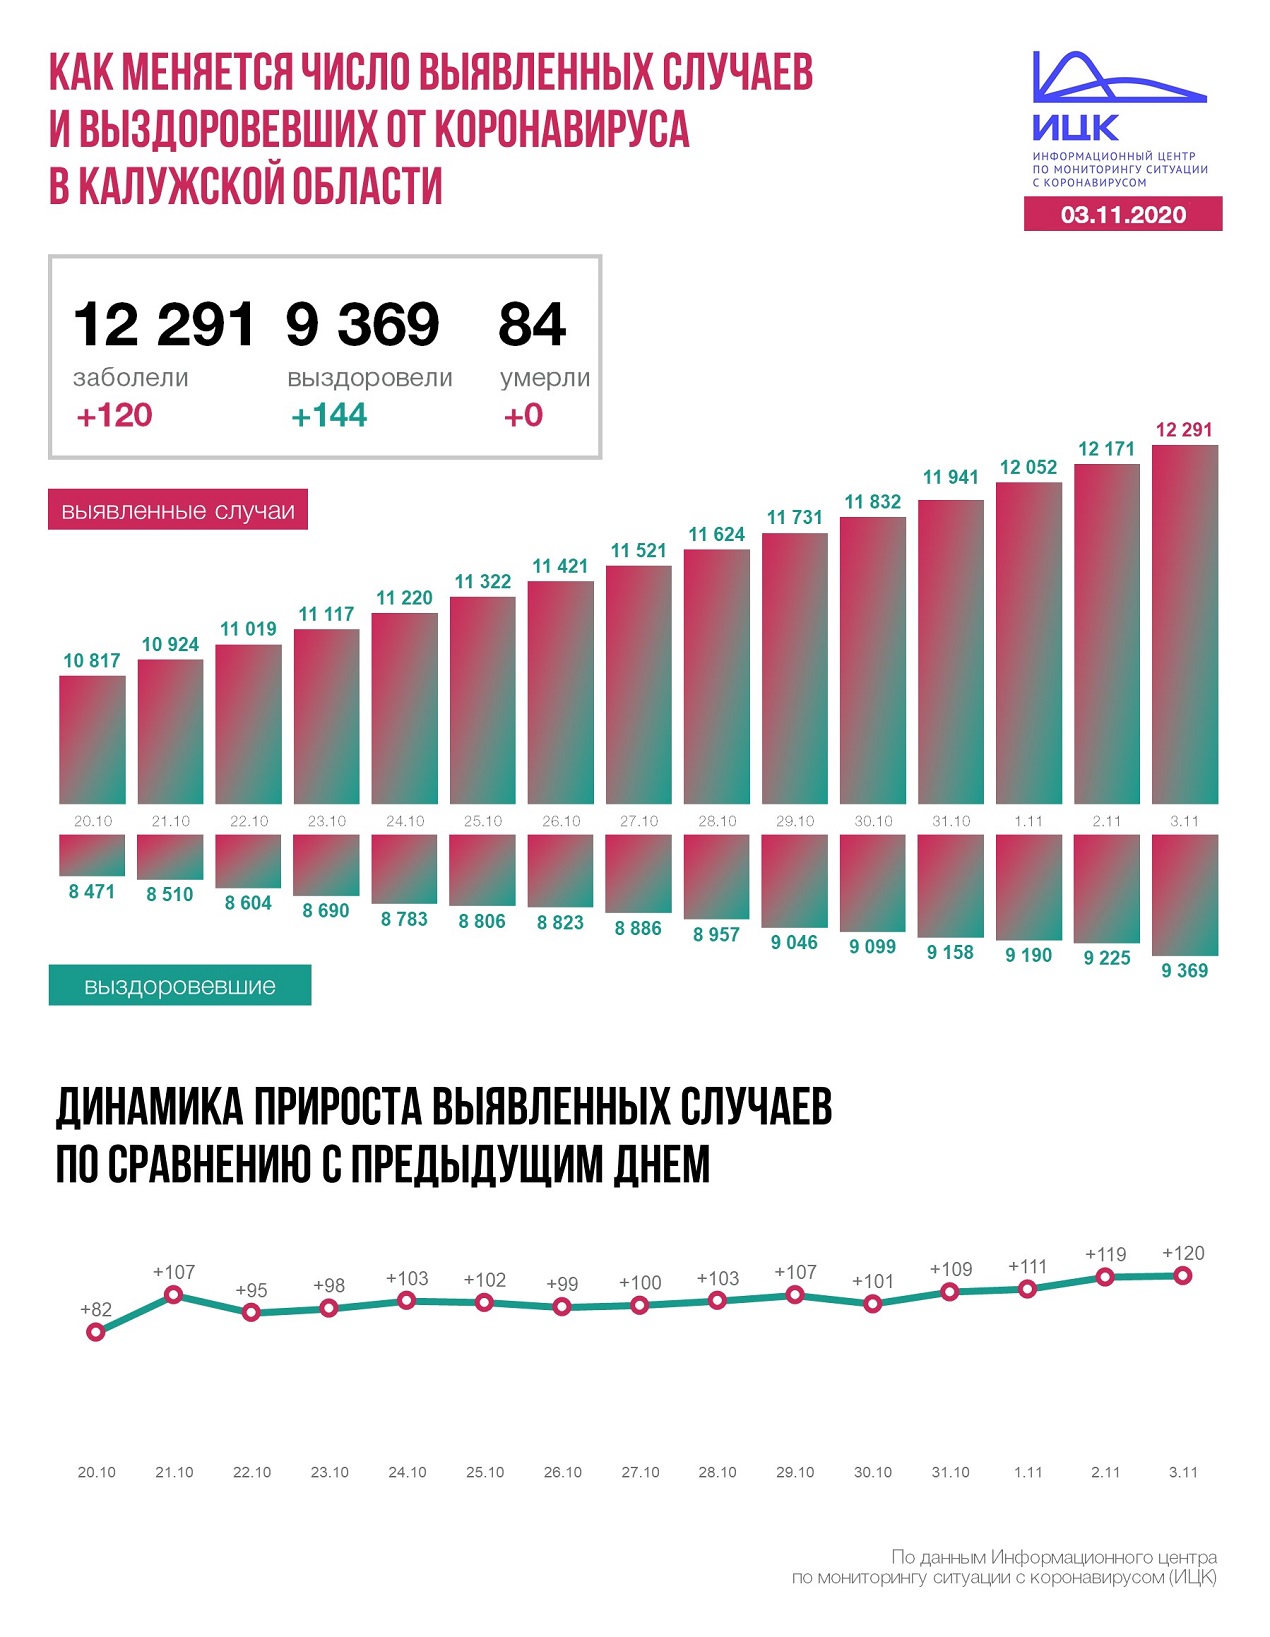 Официальные данные федерального оперативного штаба по коронавирусу в Калужской области на 3 ноября 2020 года.